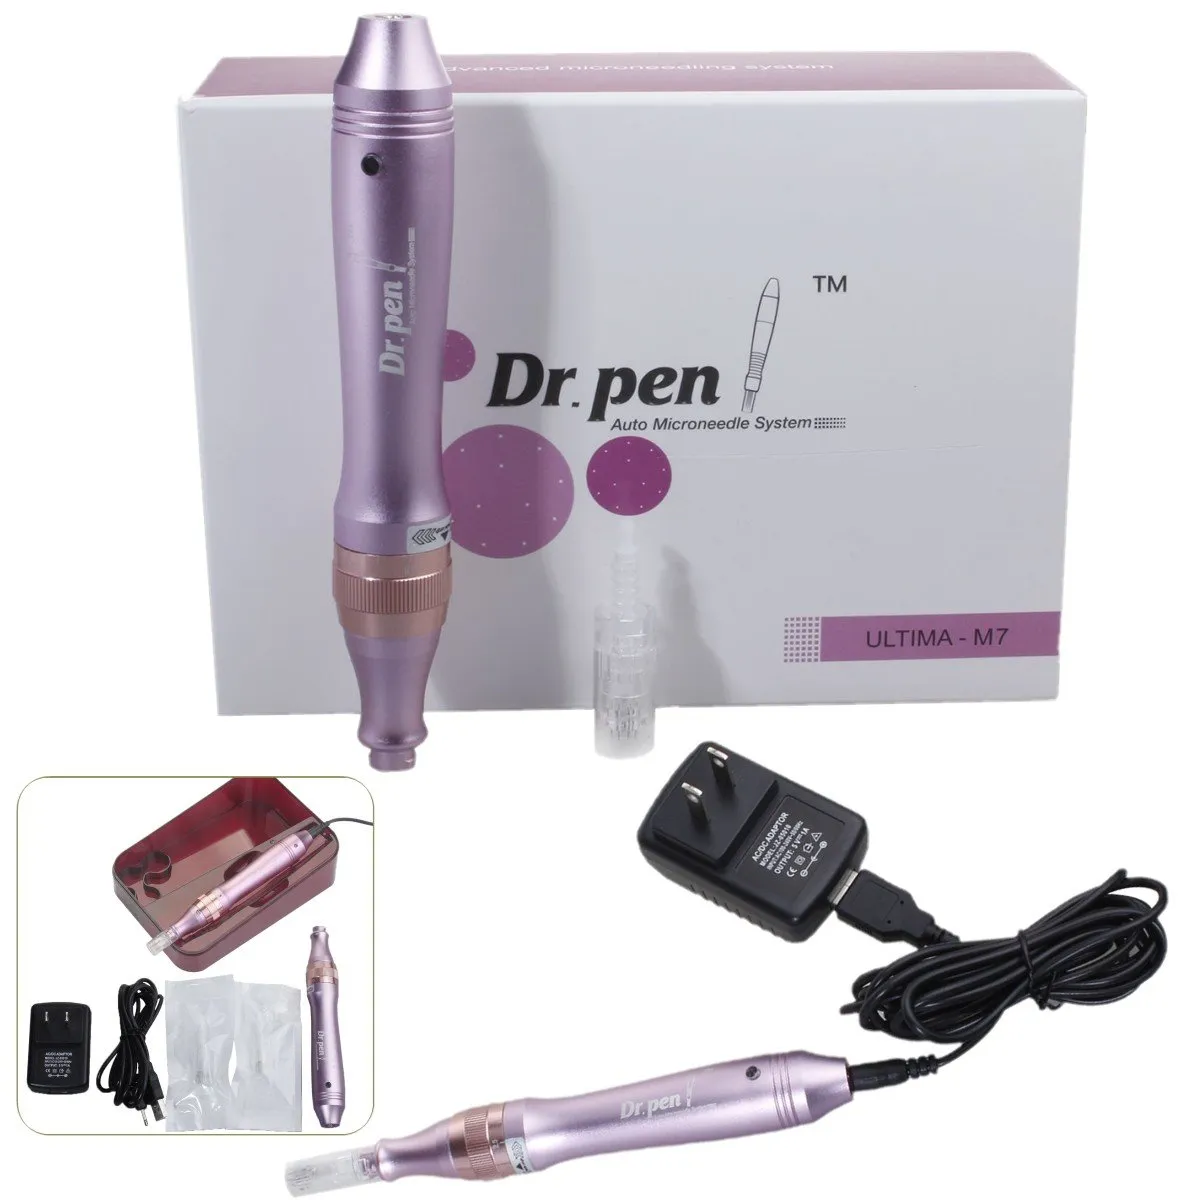 DR014 DR. PEN Dr Pen Ultima M7 inalámbrico eléctrico Derma Pen Stamp Auto Micro aguja cuidado de la piel eliminación de arrugas con 2 uds agujas de 12 pines